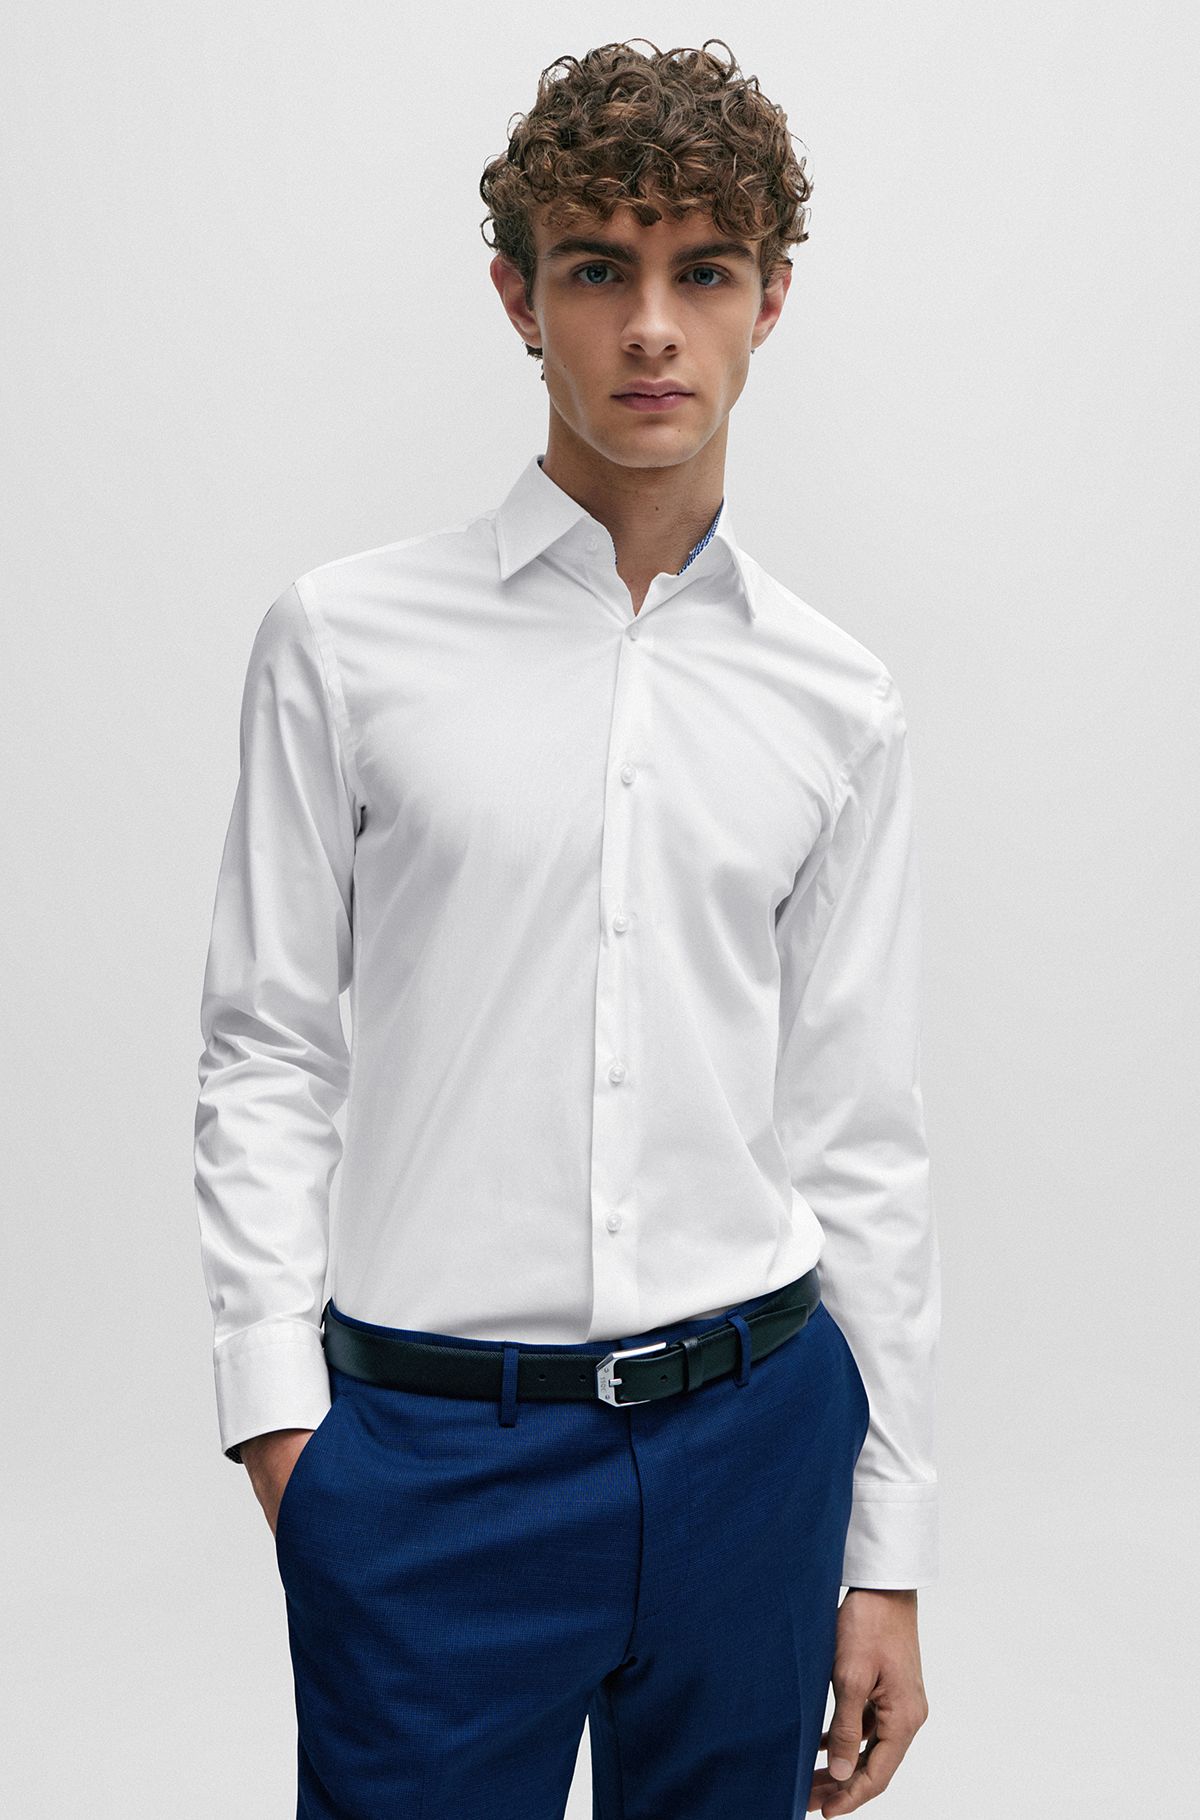 Best White Shirts for Men by HUGO BOSS